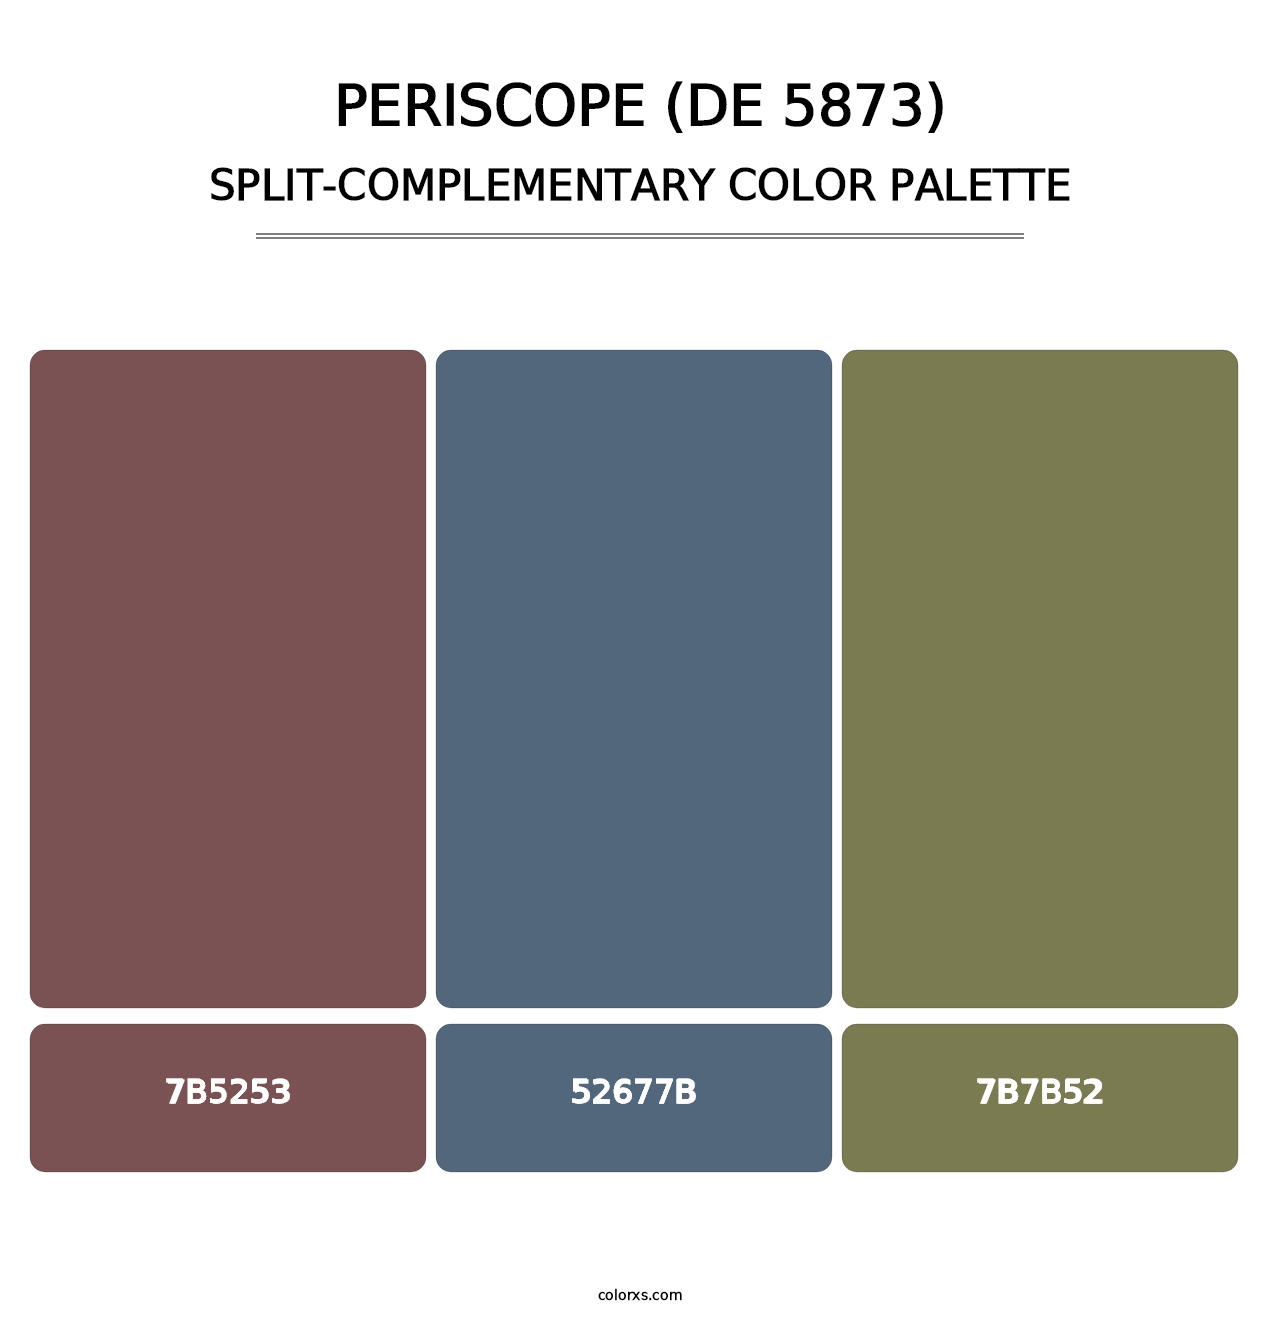 Periscope (DE 5873) - Split-Complementary Color Palette